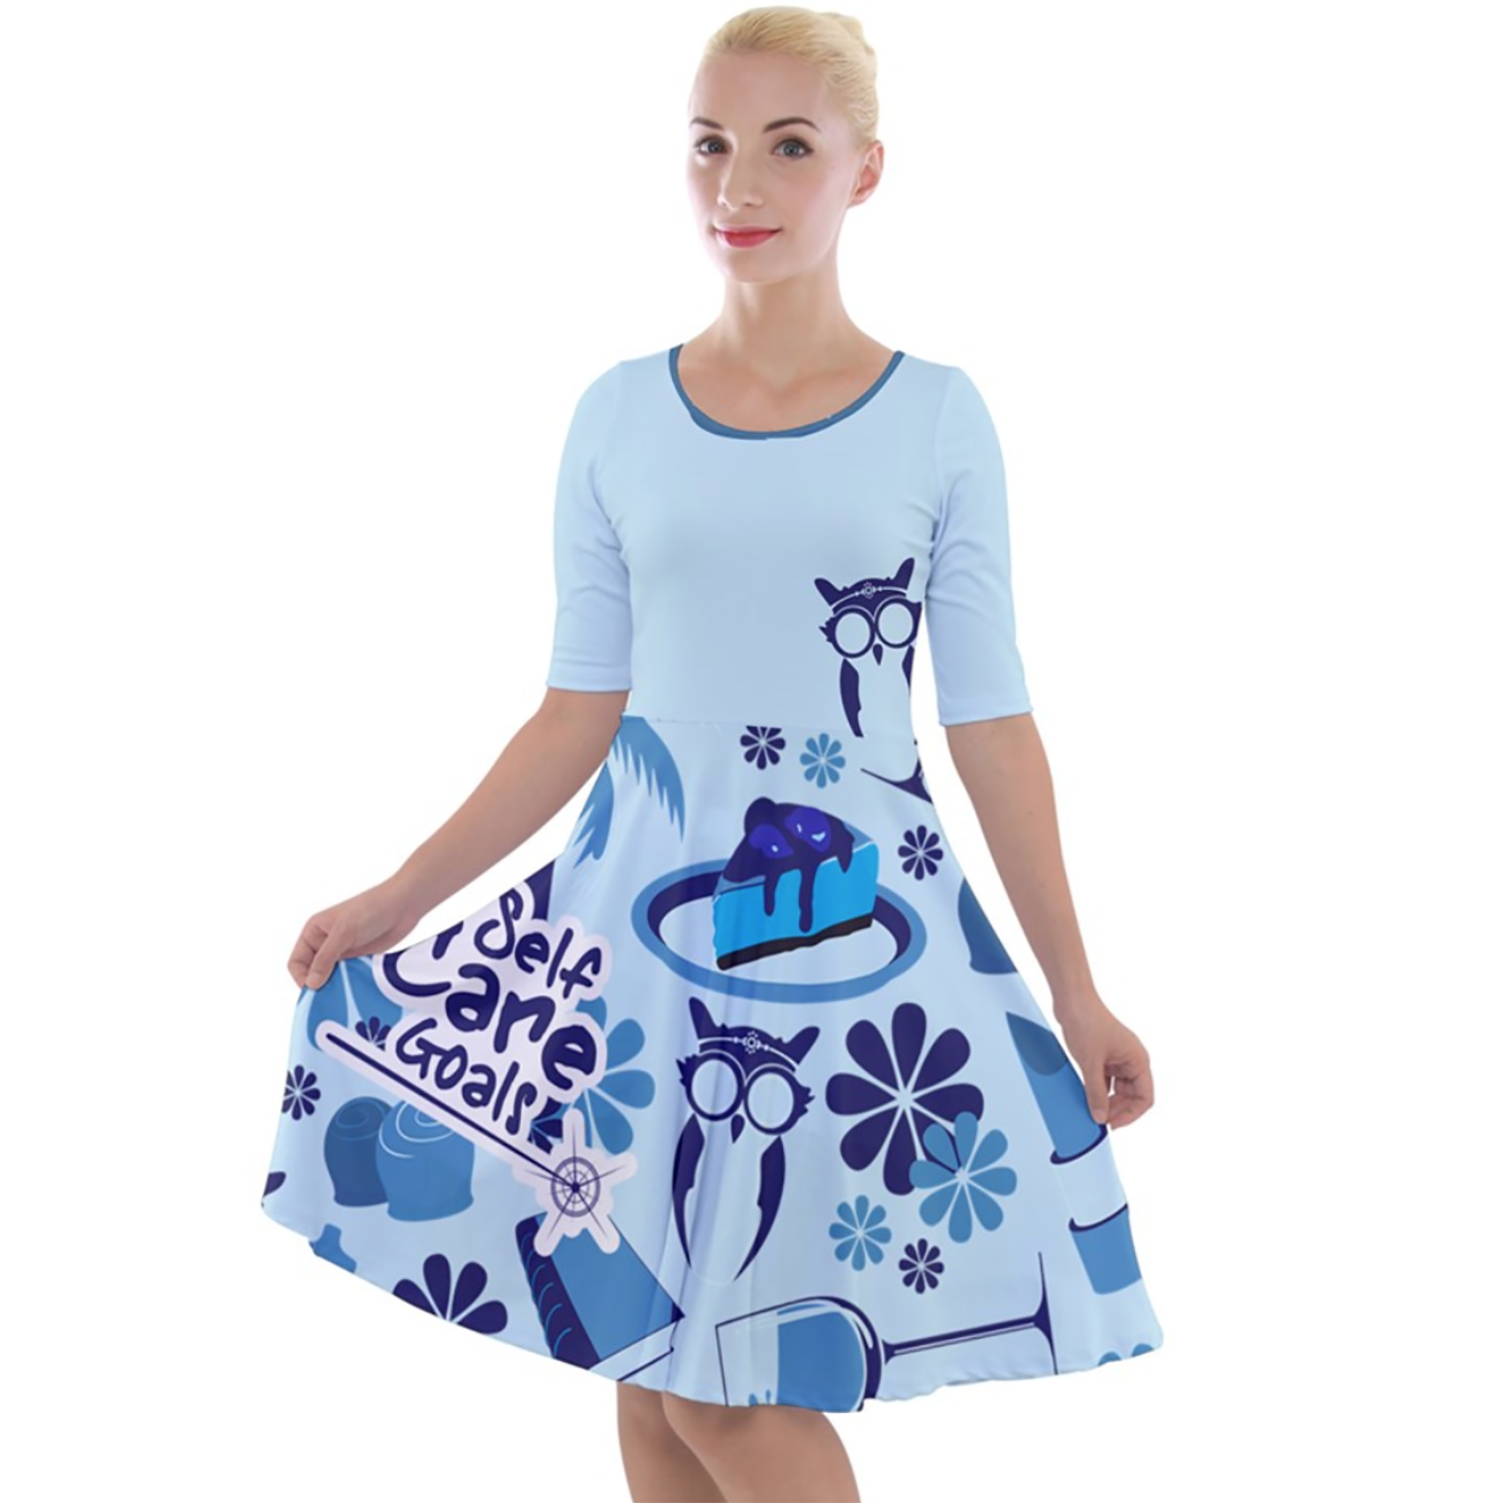 "Self-Care Goals" (BLUE) Quarter Sleeve A-Line Dress